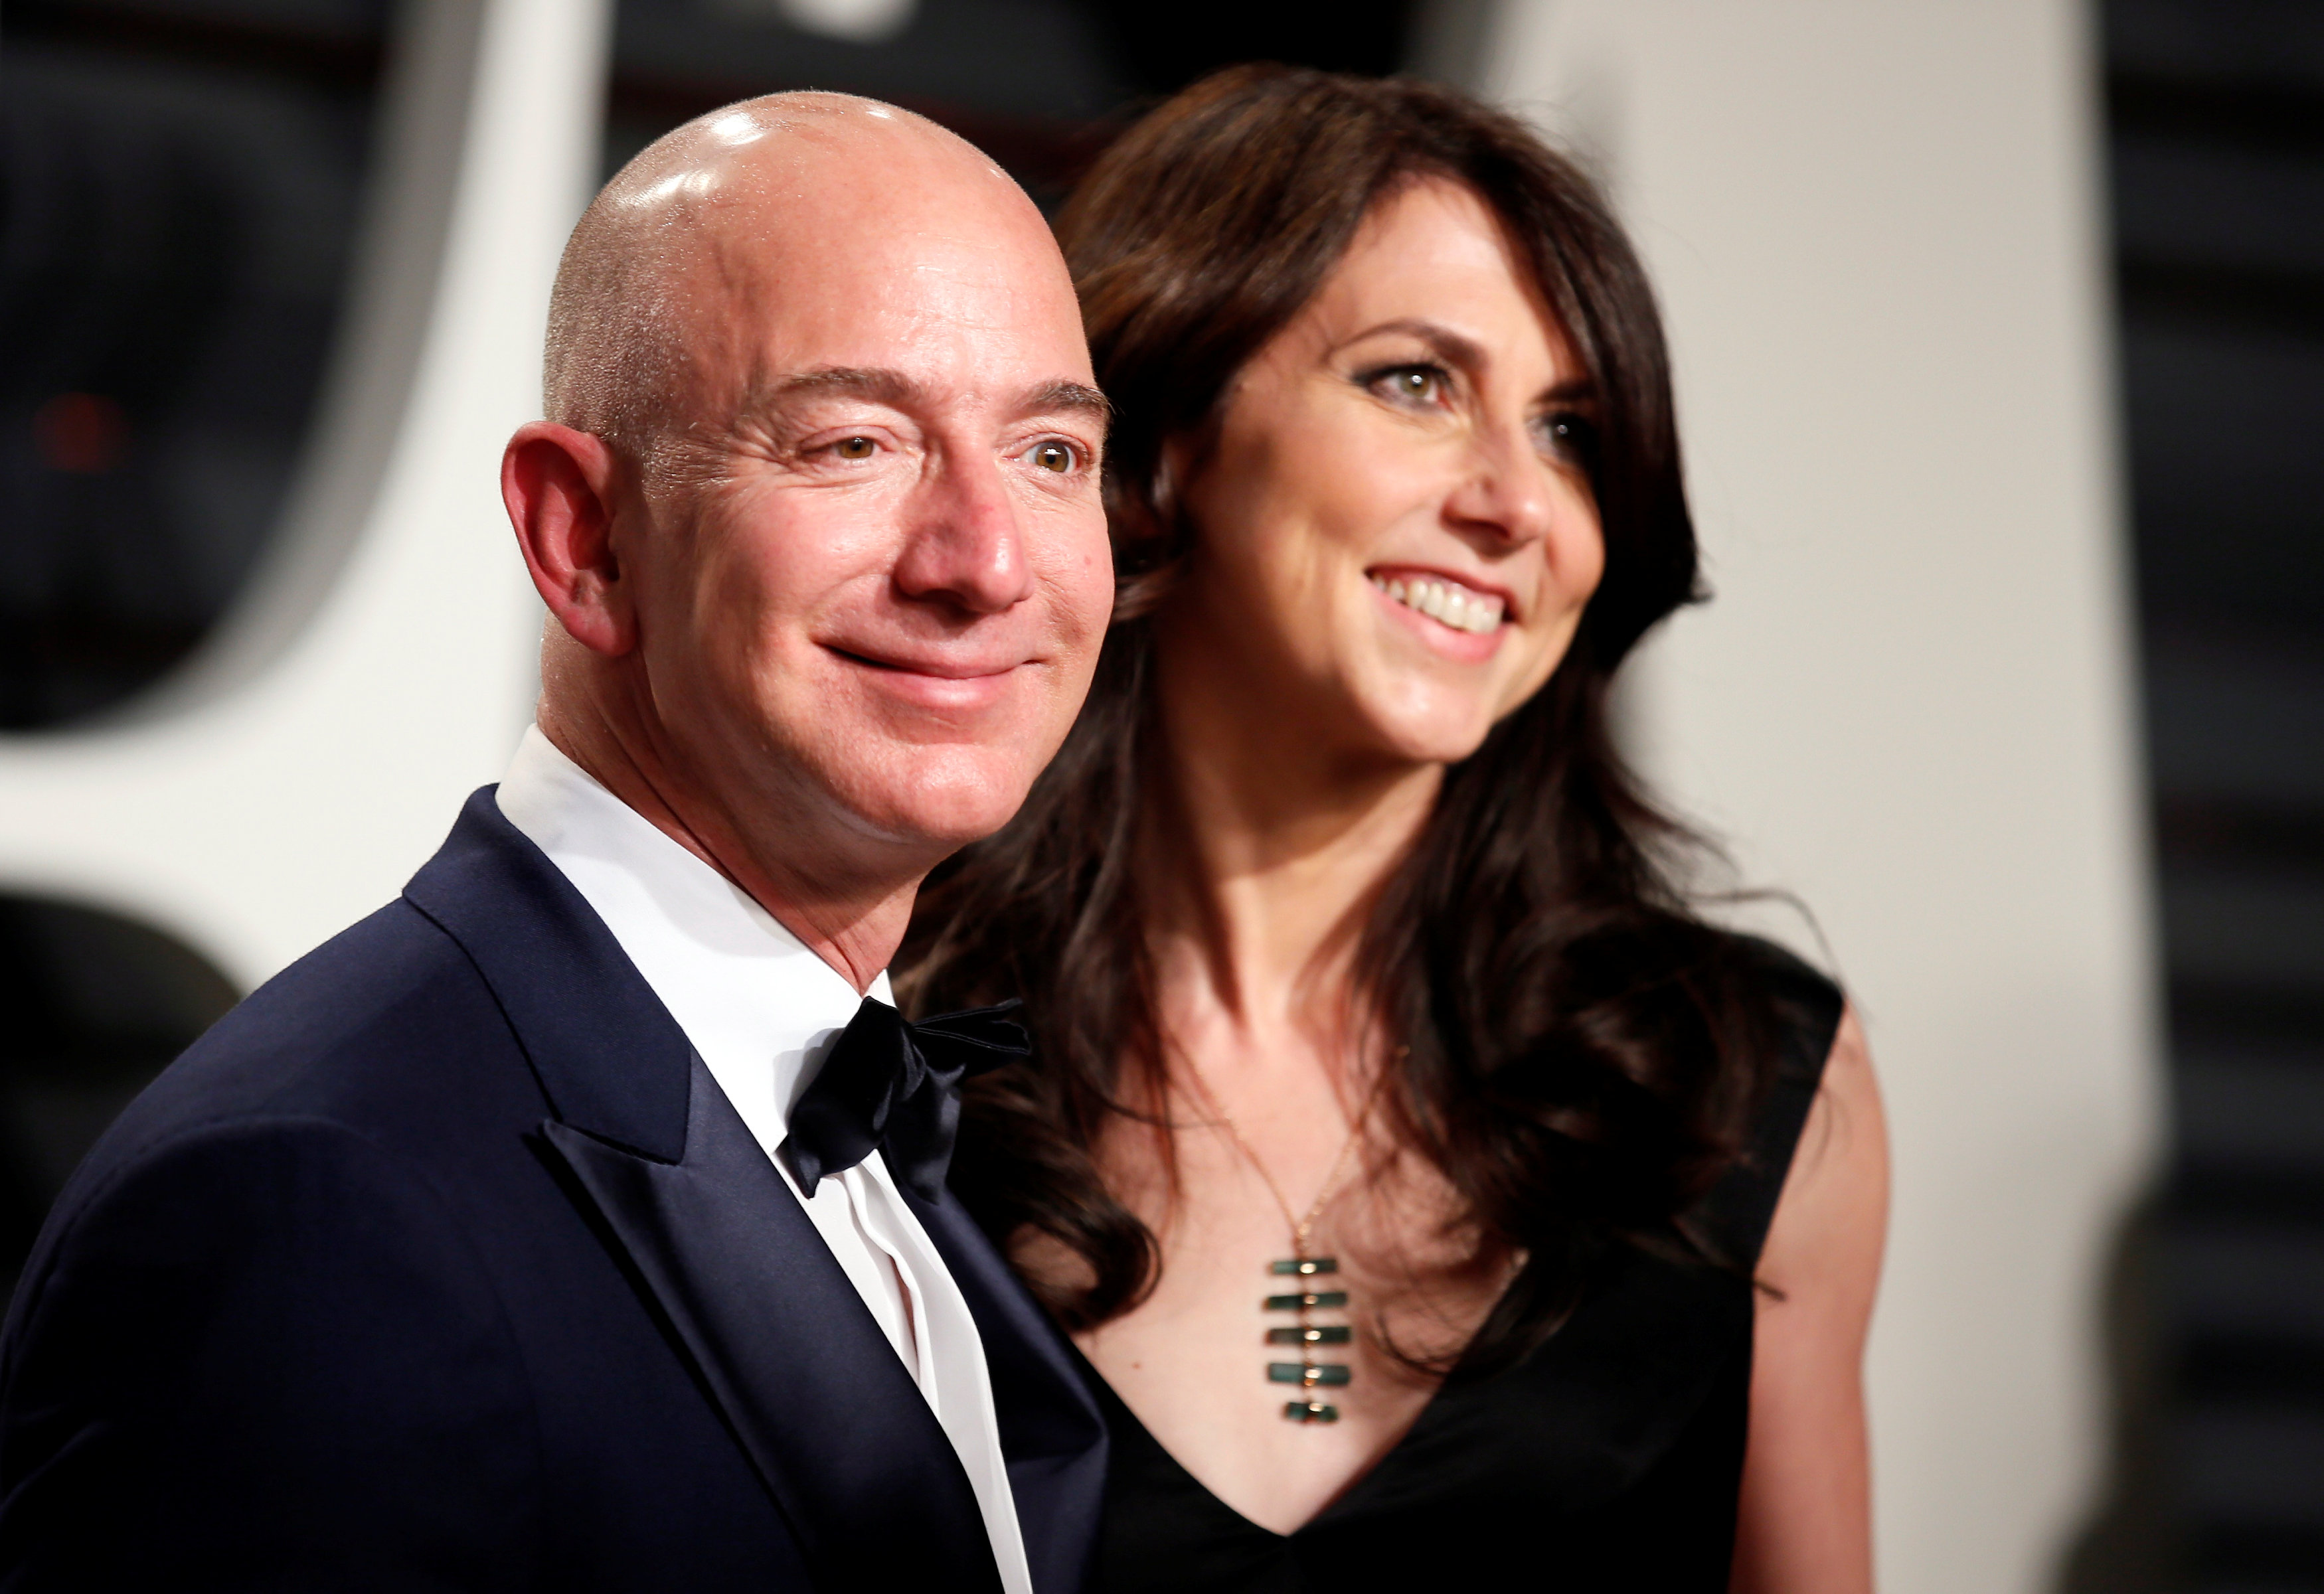 Fundador de Amazon Jeff Bezos y su esposa anuncian divorcio